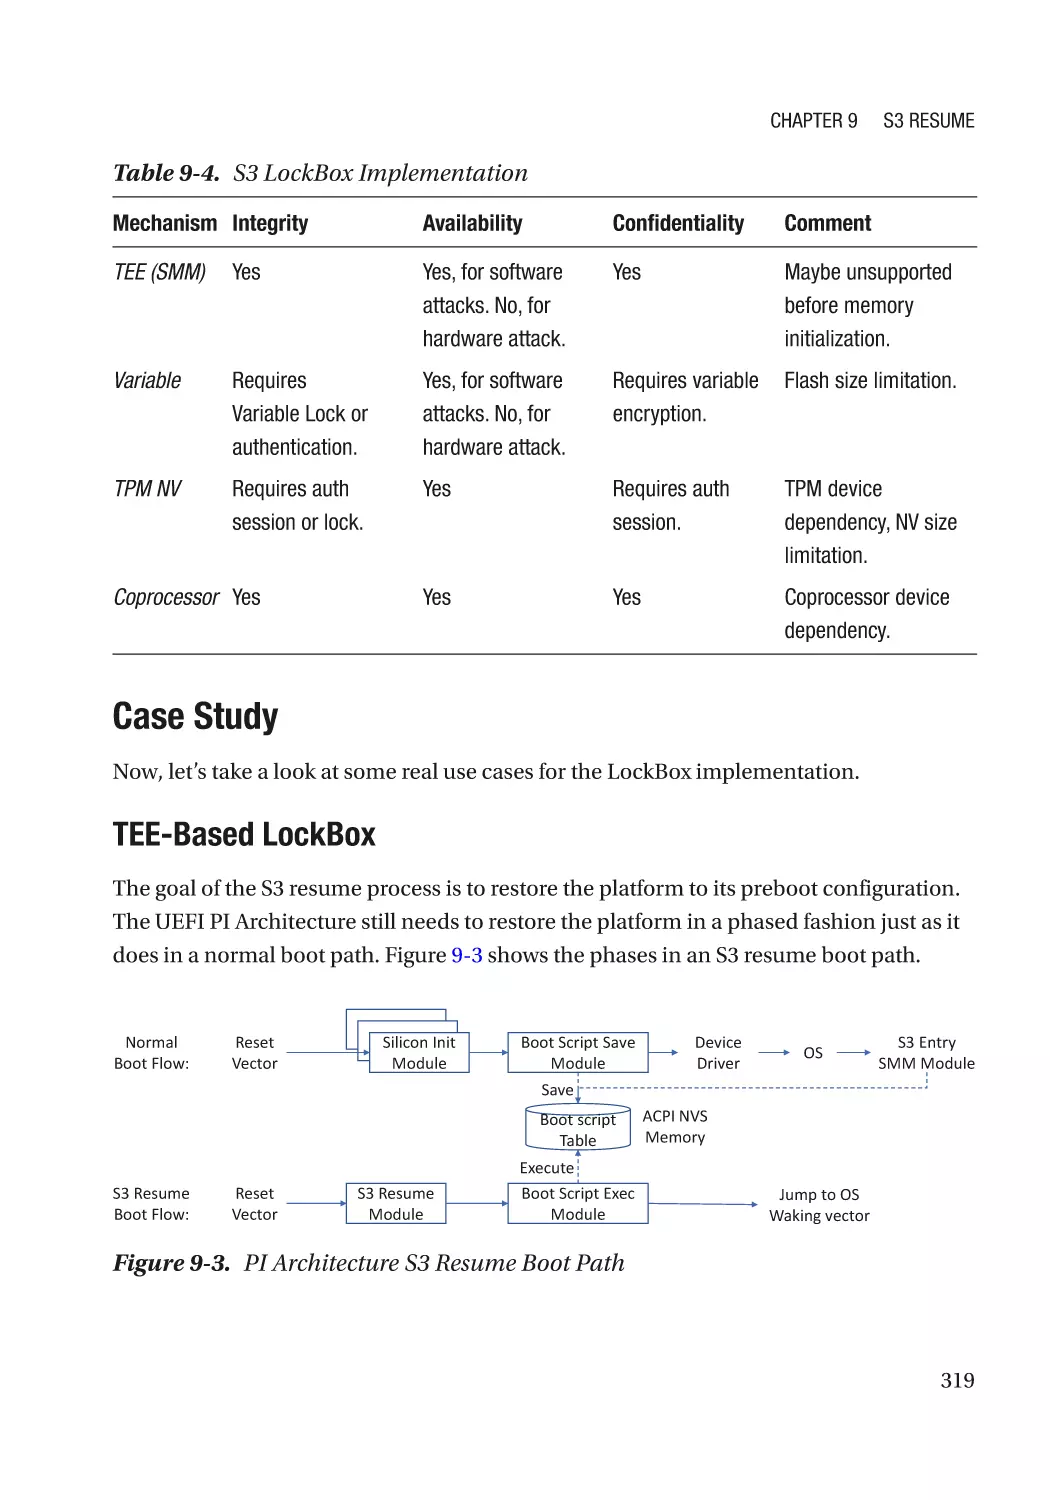 Case Study
TEE-Based LockBox